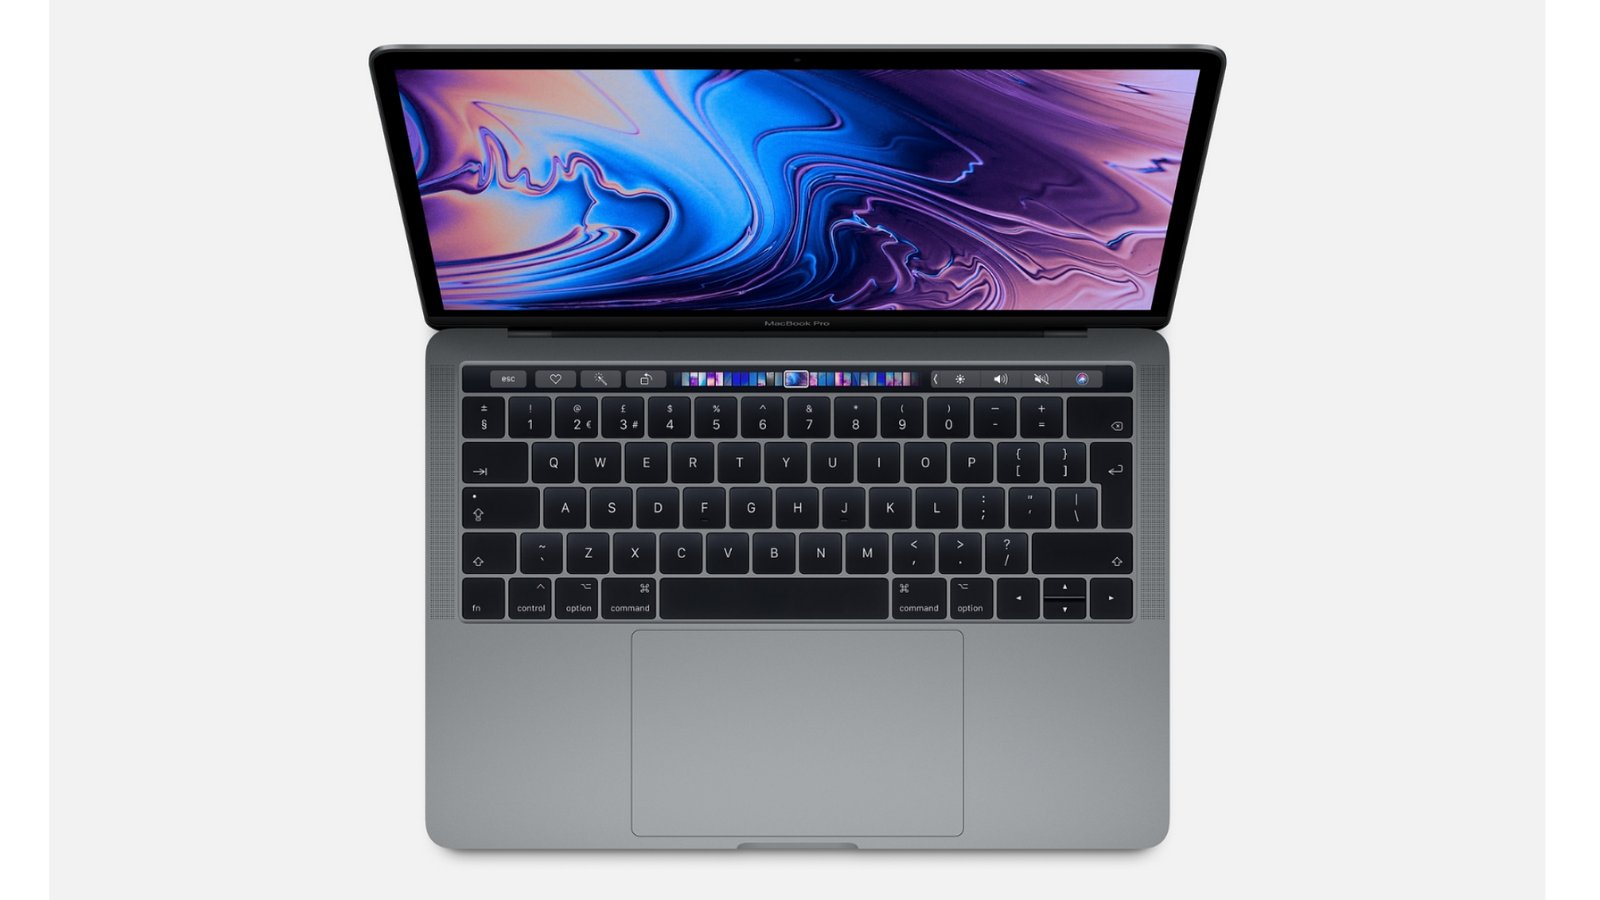 macbook pro 13-inch 2018 deals best price